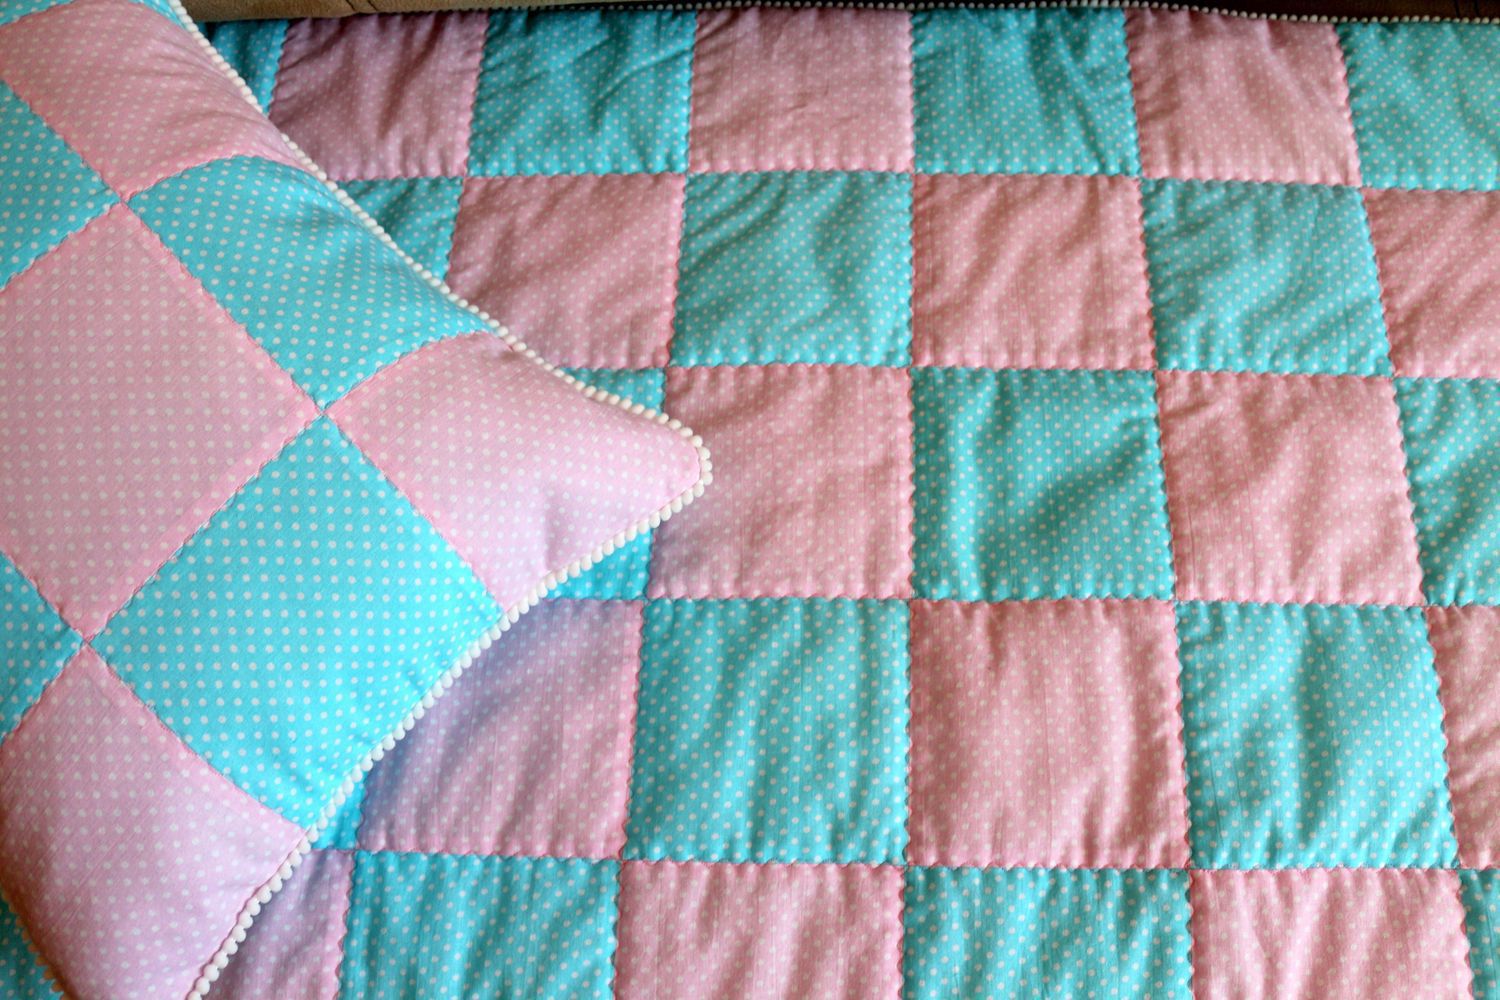 Как сделать одеяло из «быстрых» квадратов в стиле пэчворк